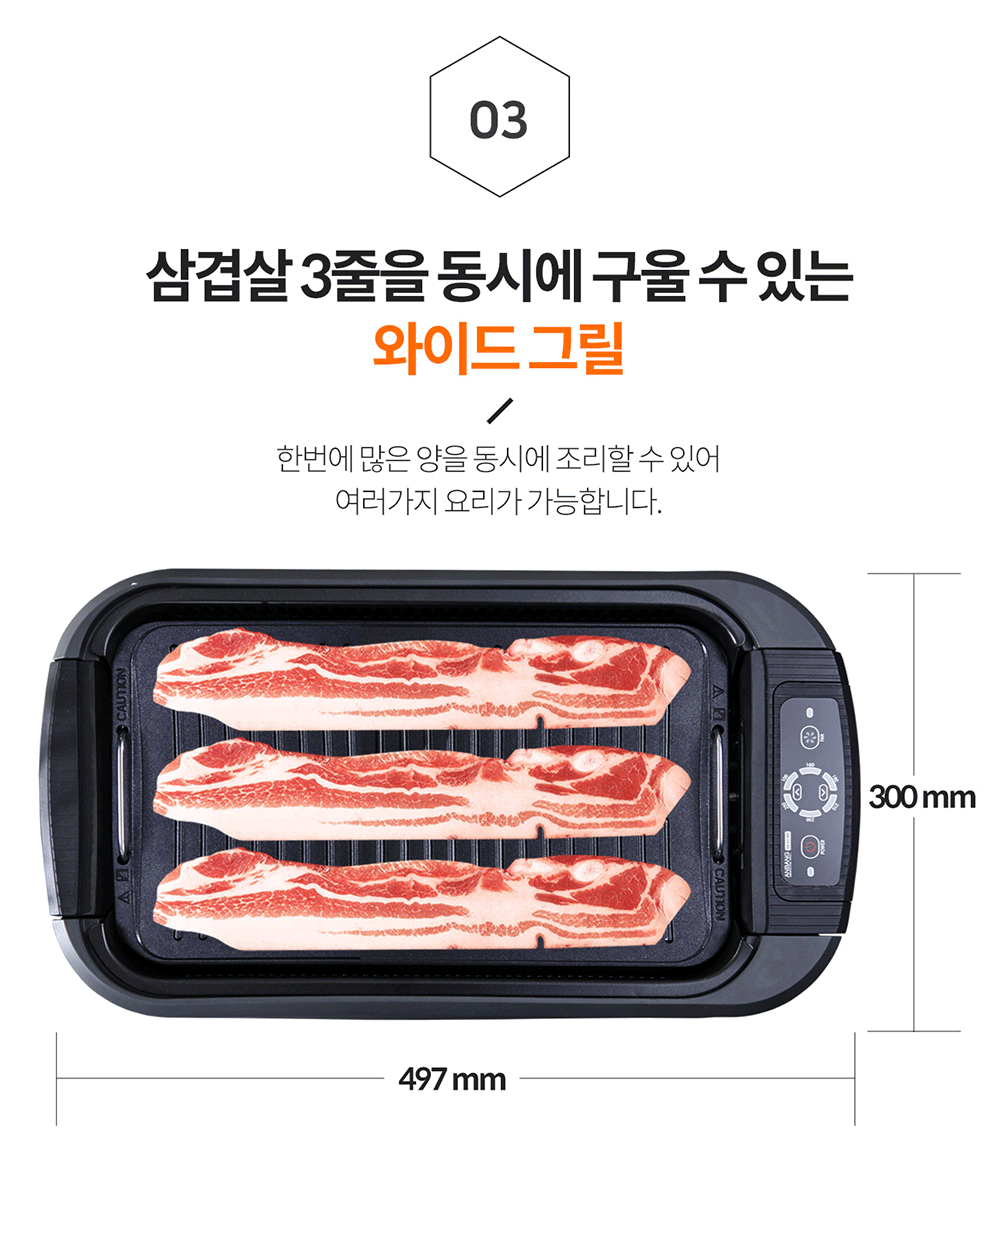 韓國食品-[DNW] Anbang 室內可用零油煙電子燒烤爐 (AB301MF)